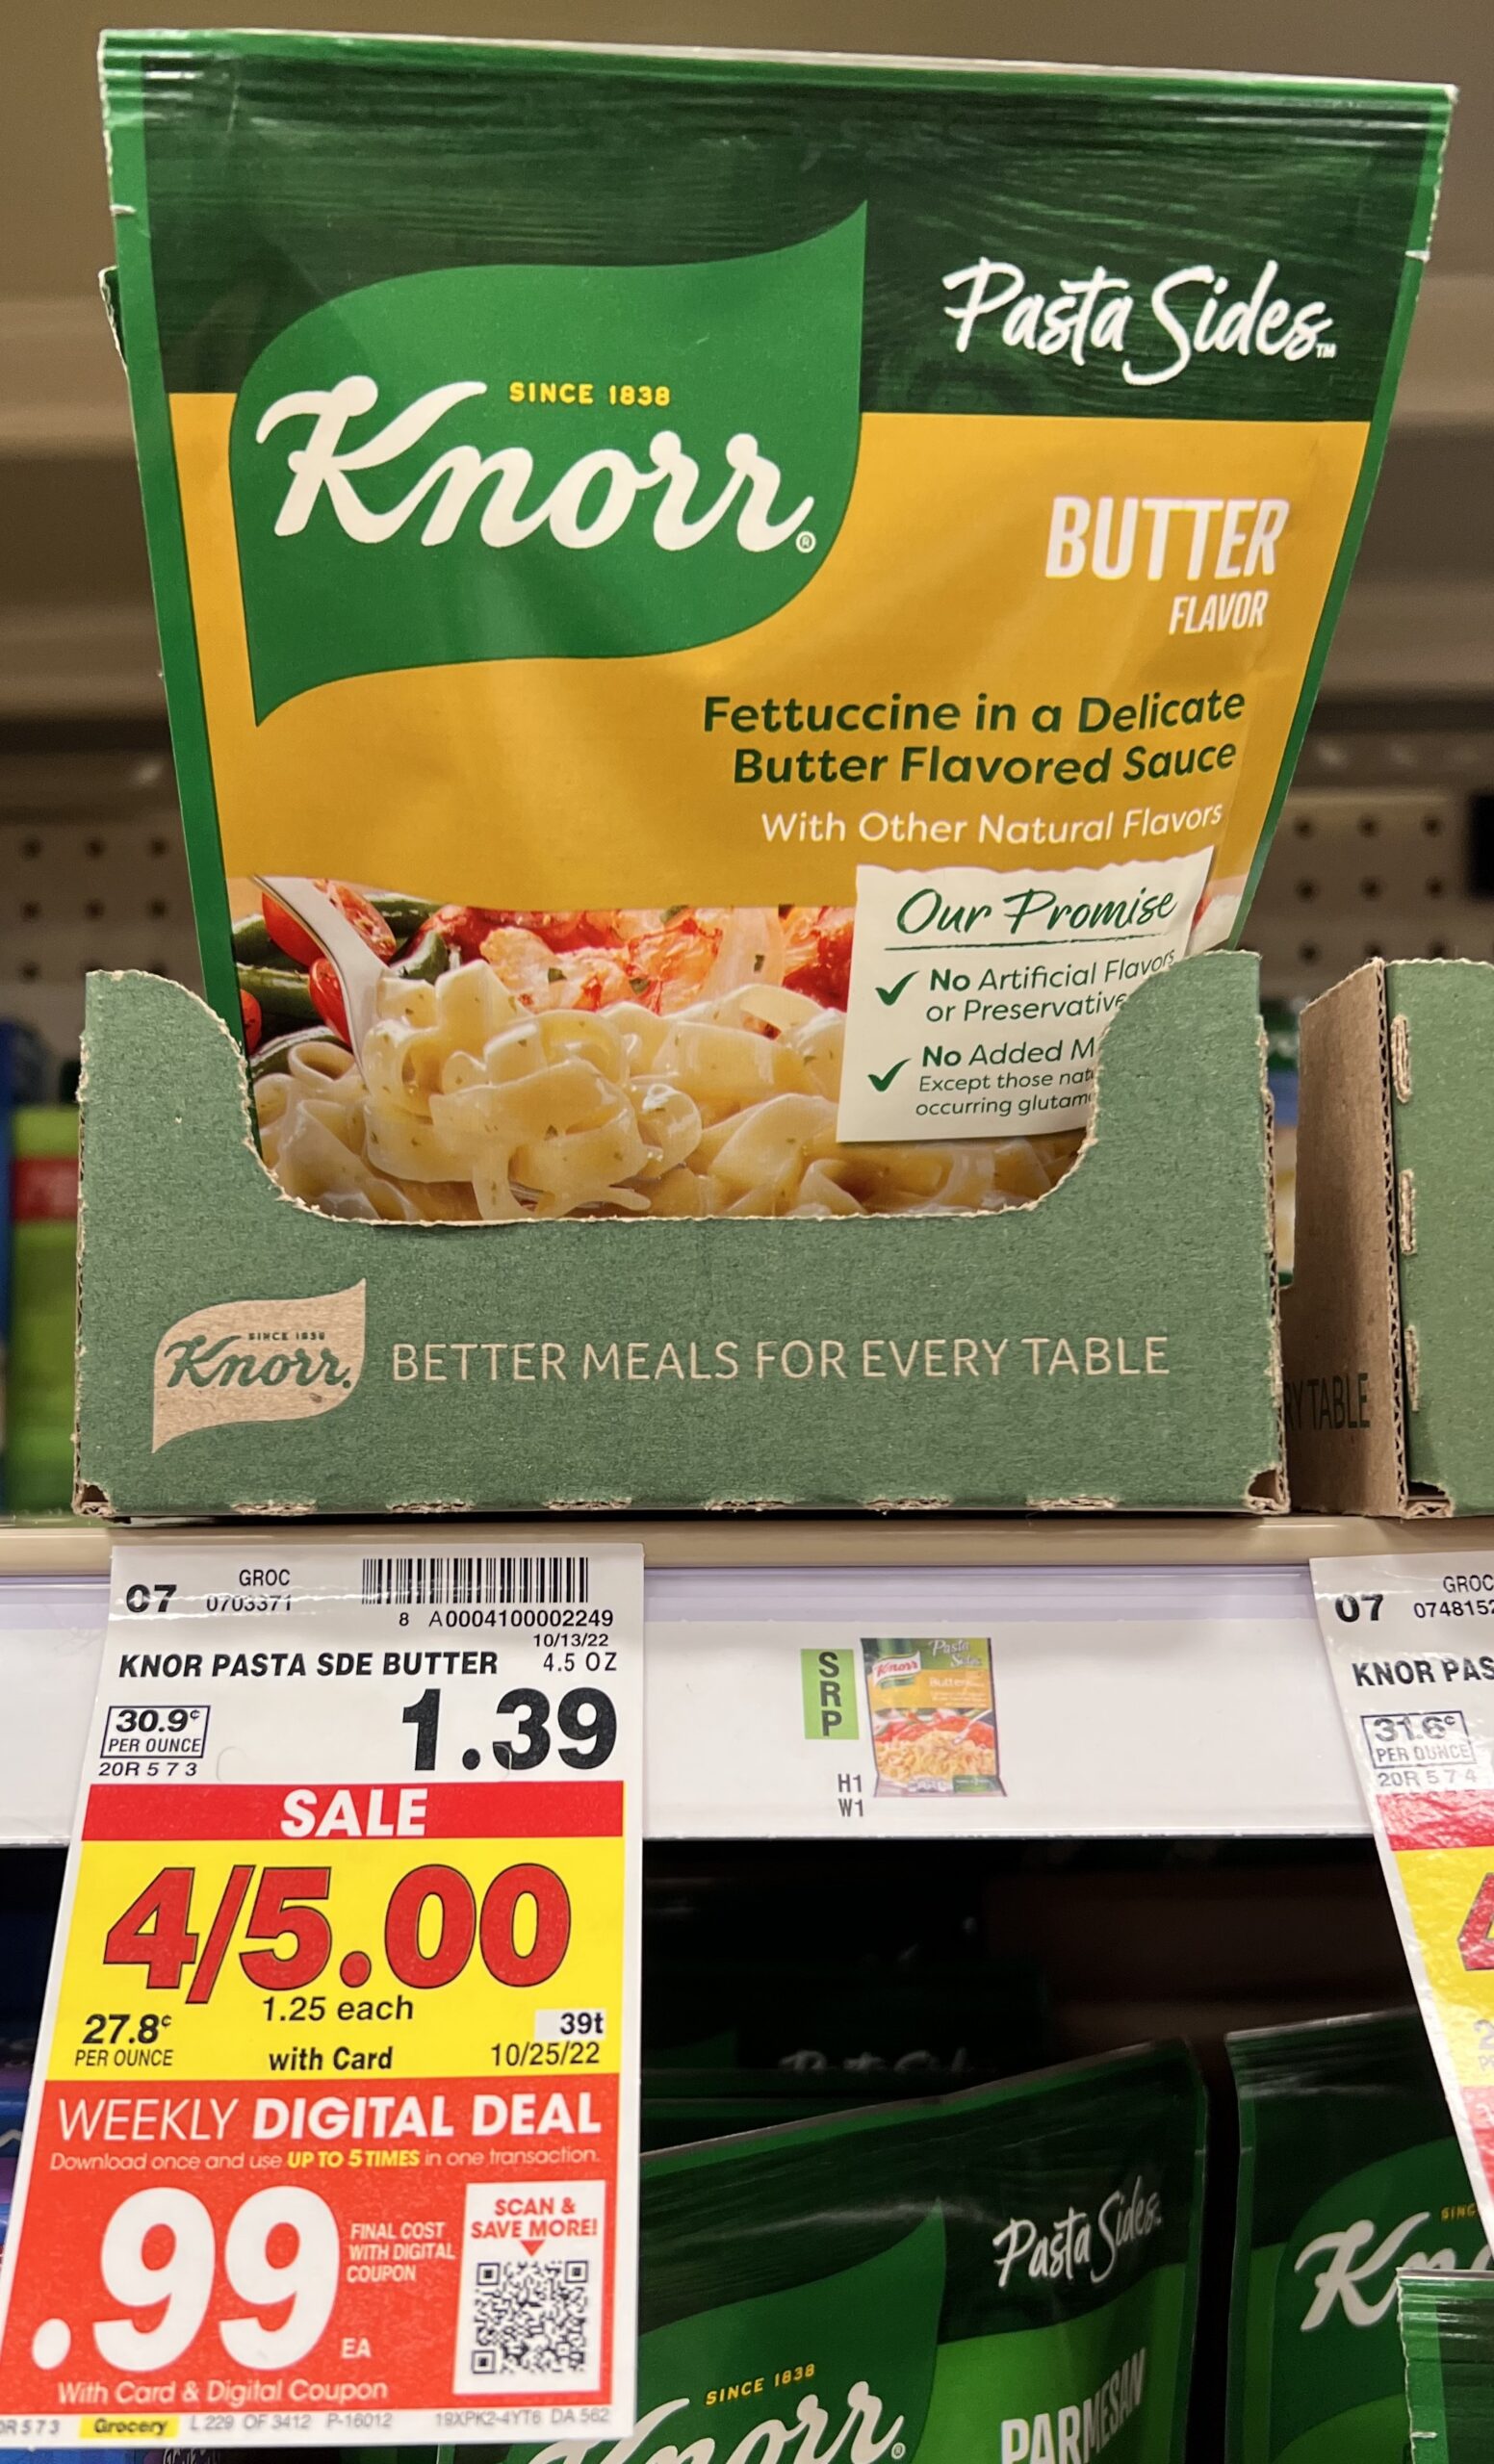 Knorr Pasta Side Kroger Shelf Image_1